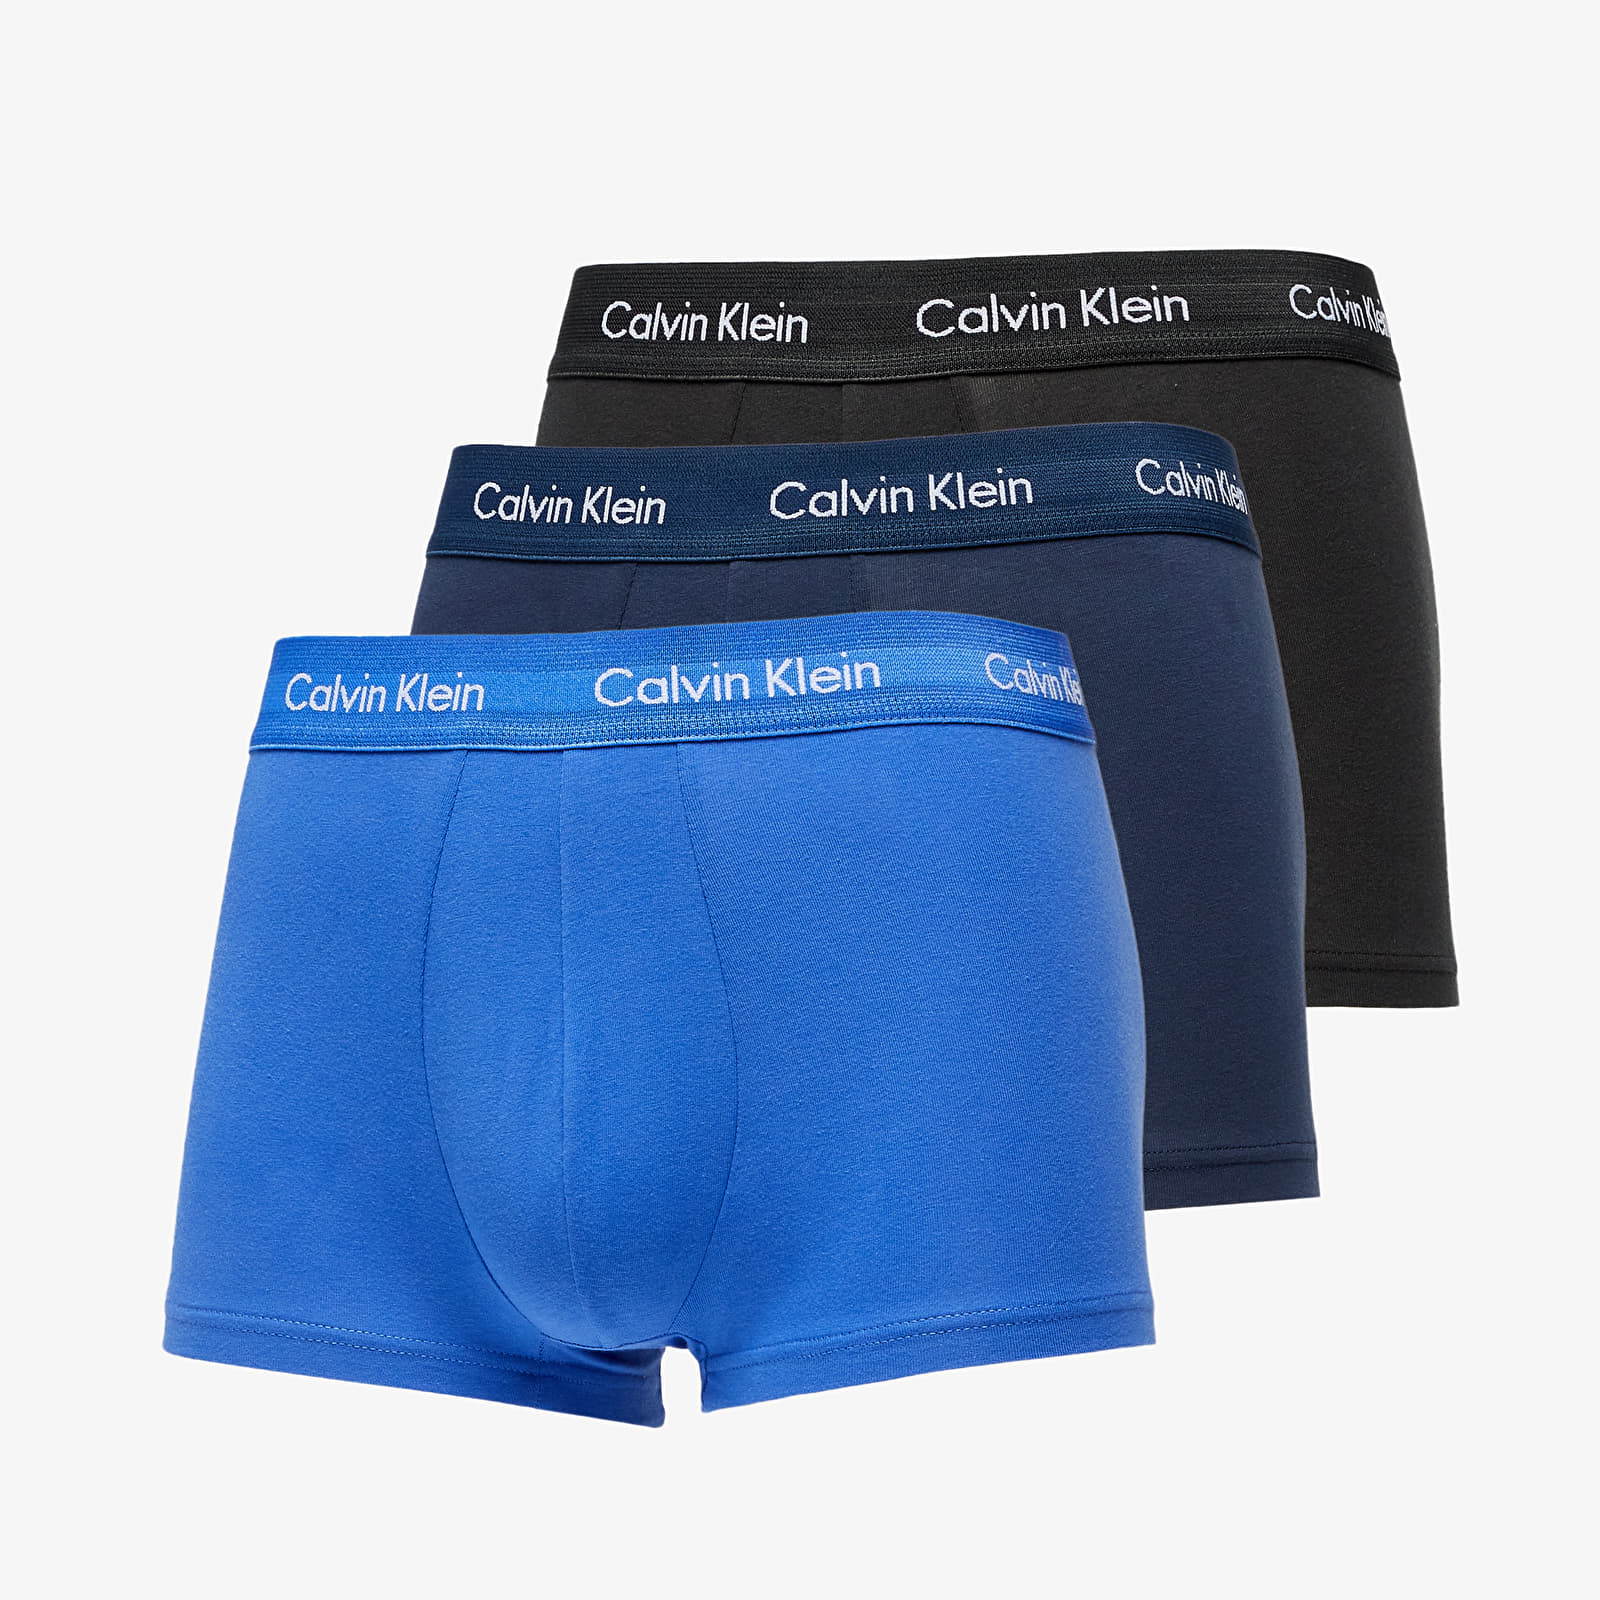 Βοξεράκια Calvin Klein Low Rise Trunks 3 Pack Blue/ Navy/ Black